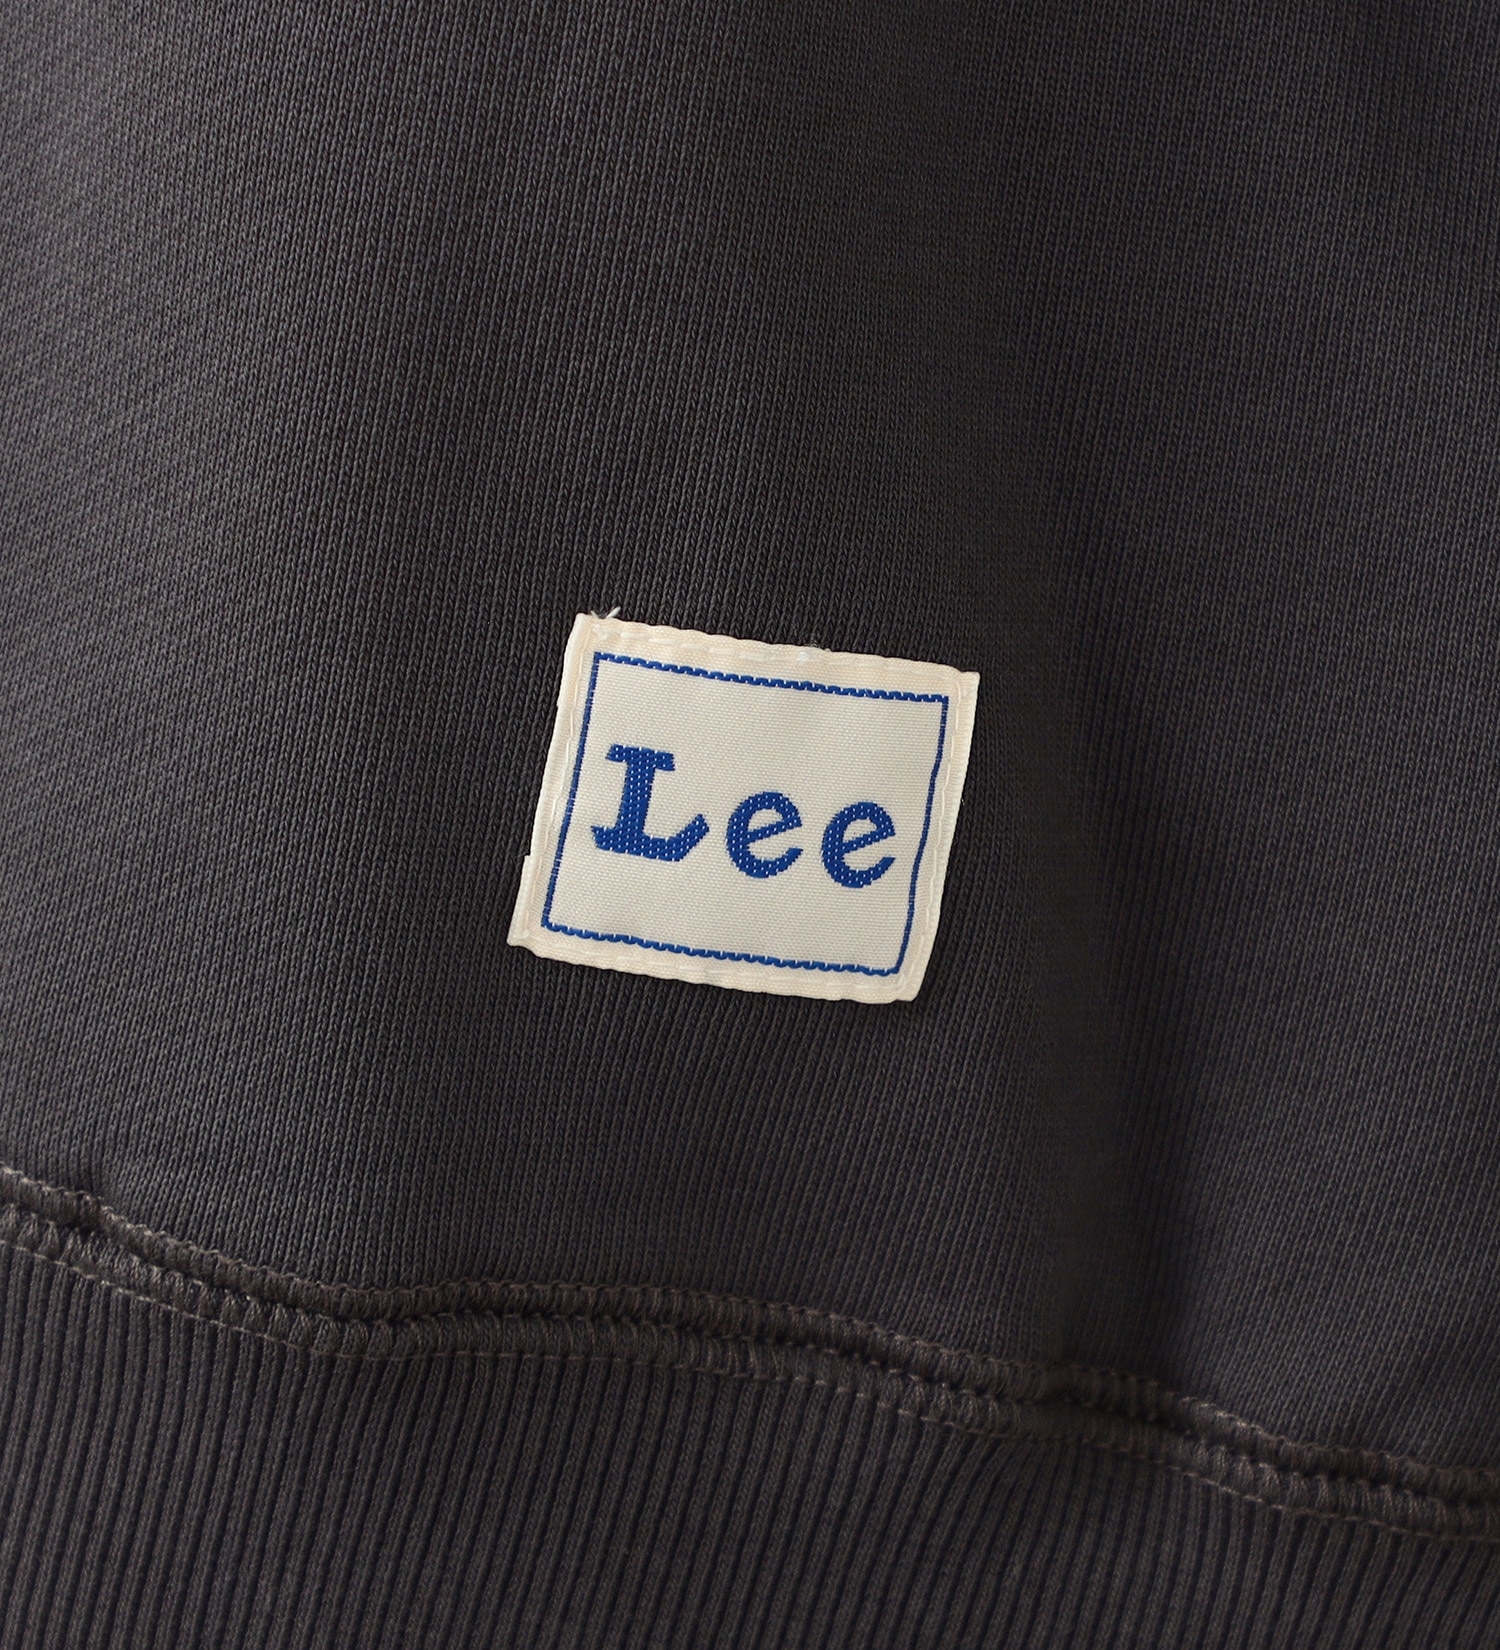 Lee(リー)の【GW SALE】【親子】 Lee 2wayレイヤードスリーブ リメイクスエット|トップス/スウェット/レディース|チャコールグレー